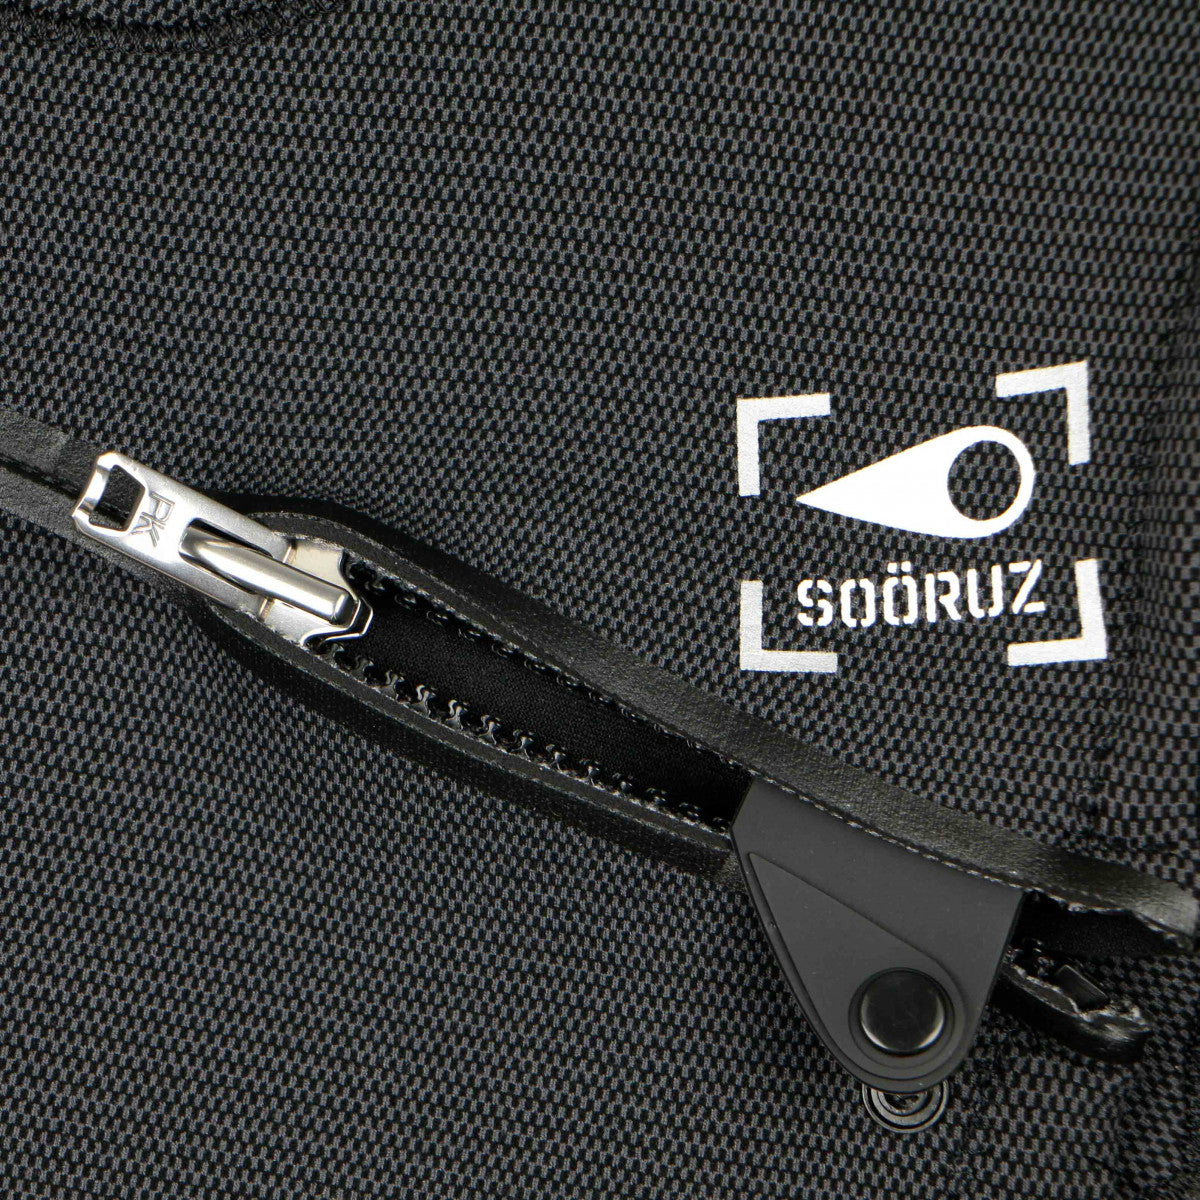 SOORUZ GURU PRO 3/2 Chest-Zip Oysterperne חליפת גלישה 2/3 מ"מ לגברים רוכסן חזה חורף 2022 בצבע שחור